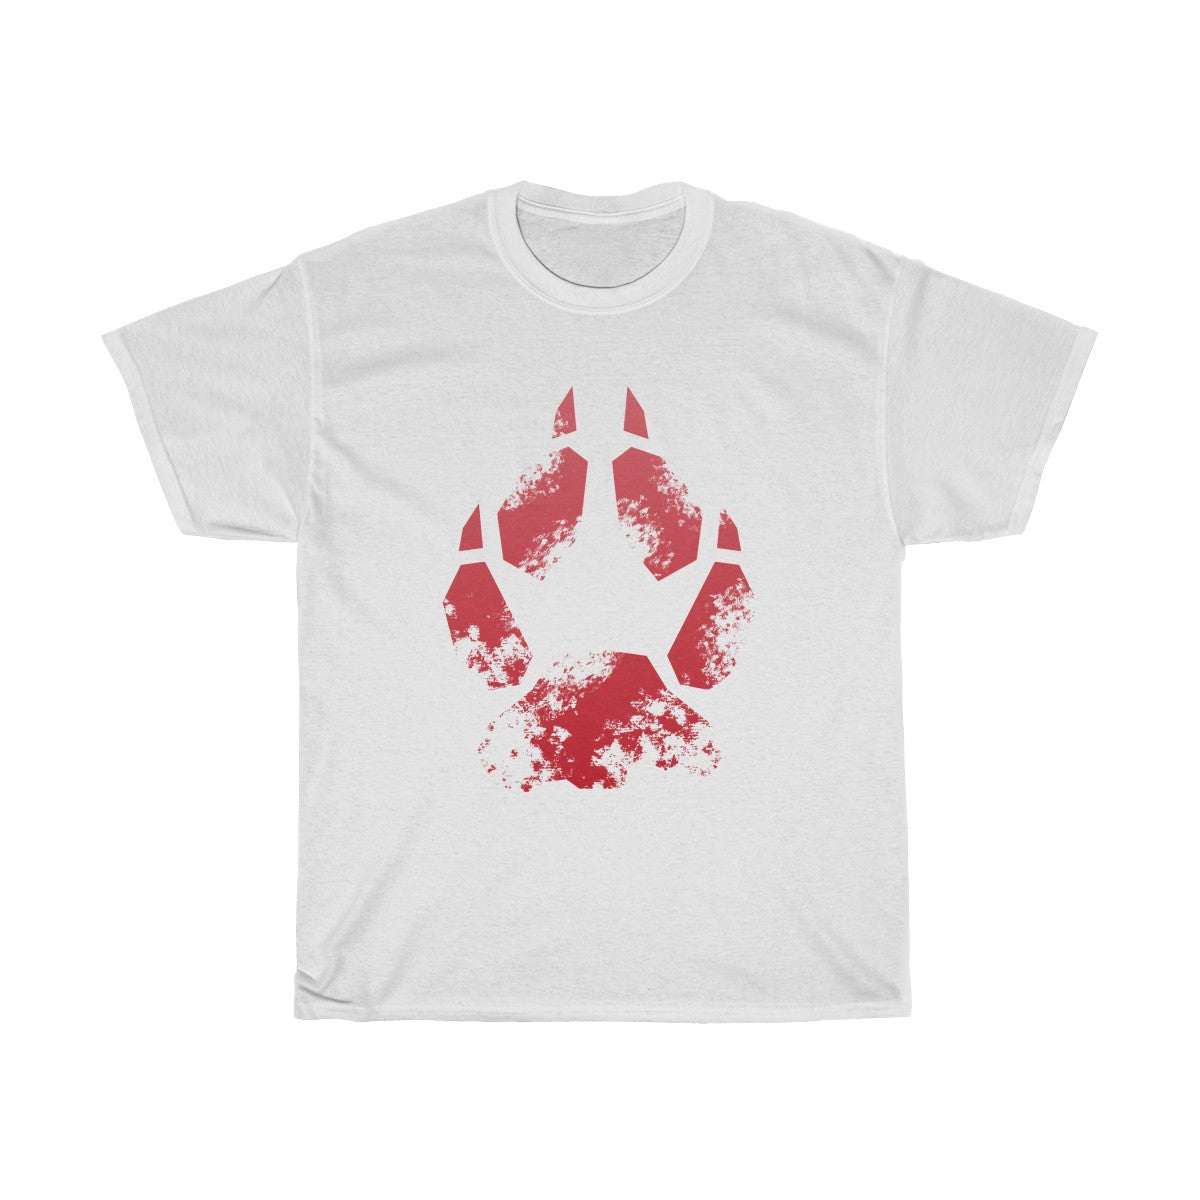 Splash Red Fox - T-Shirt T-Shirt Wexon White S 